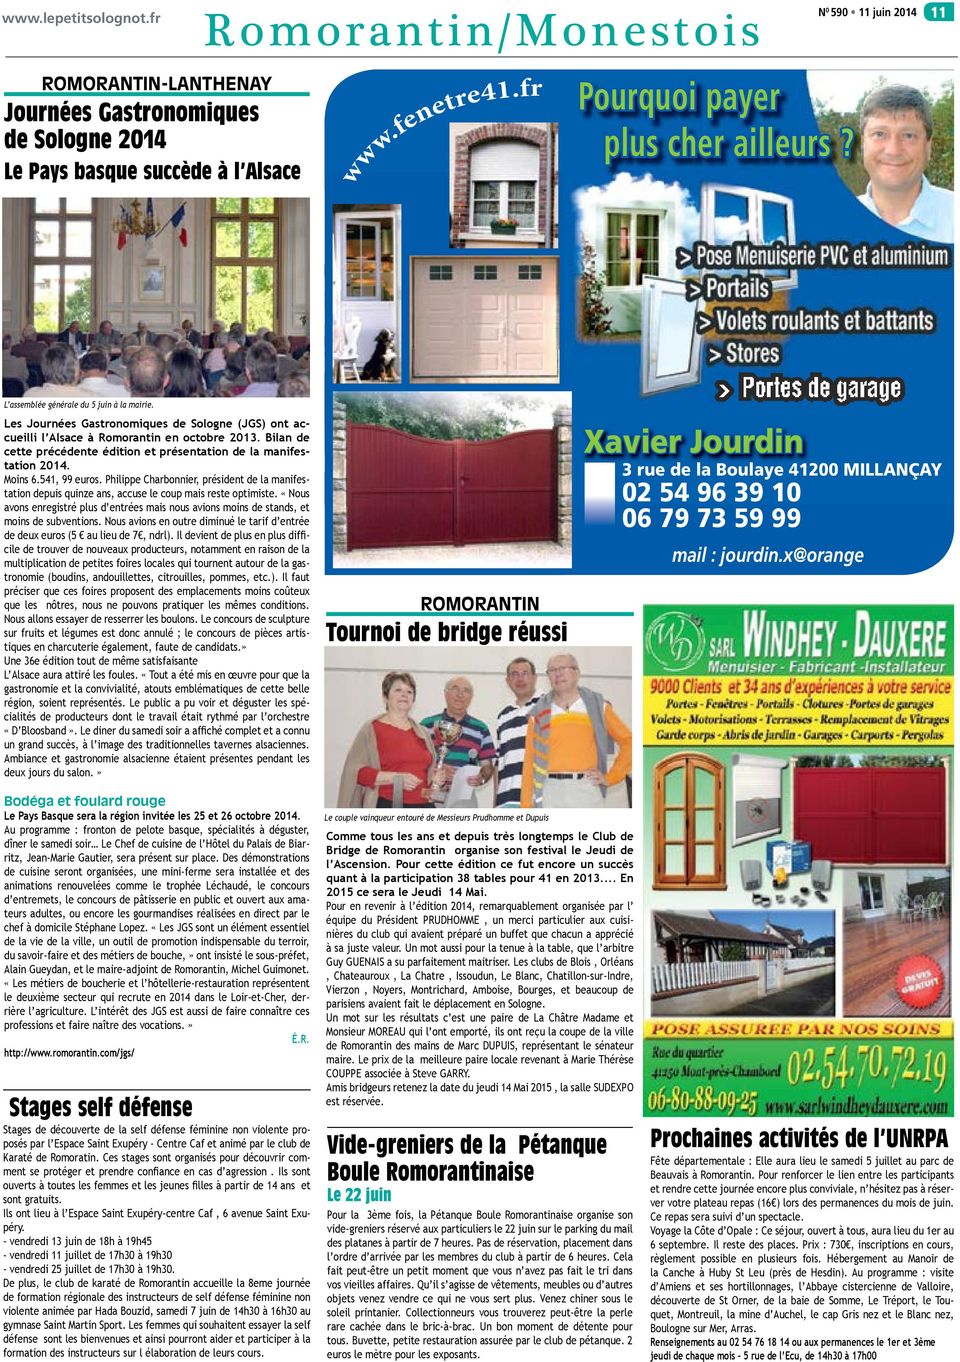 L assemblée générale du 5 juin à la mairie. Les Journées Gastronomiques de Sologne (JGS) ont accueilli l Alsace à Romorantin en octobre 2013.